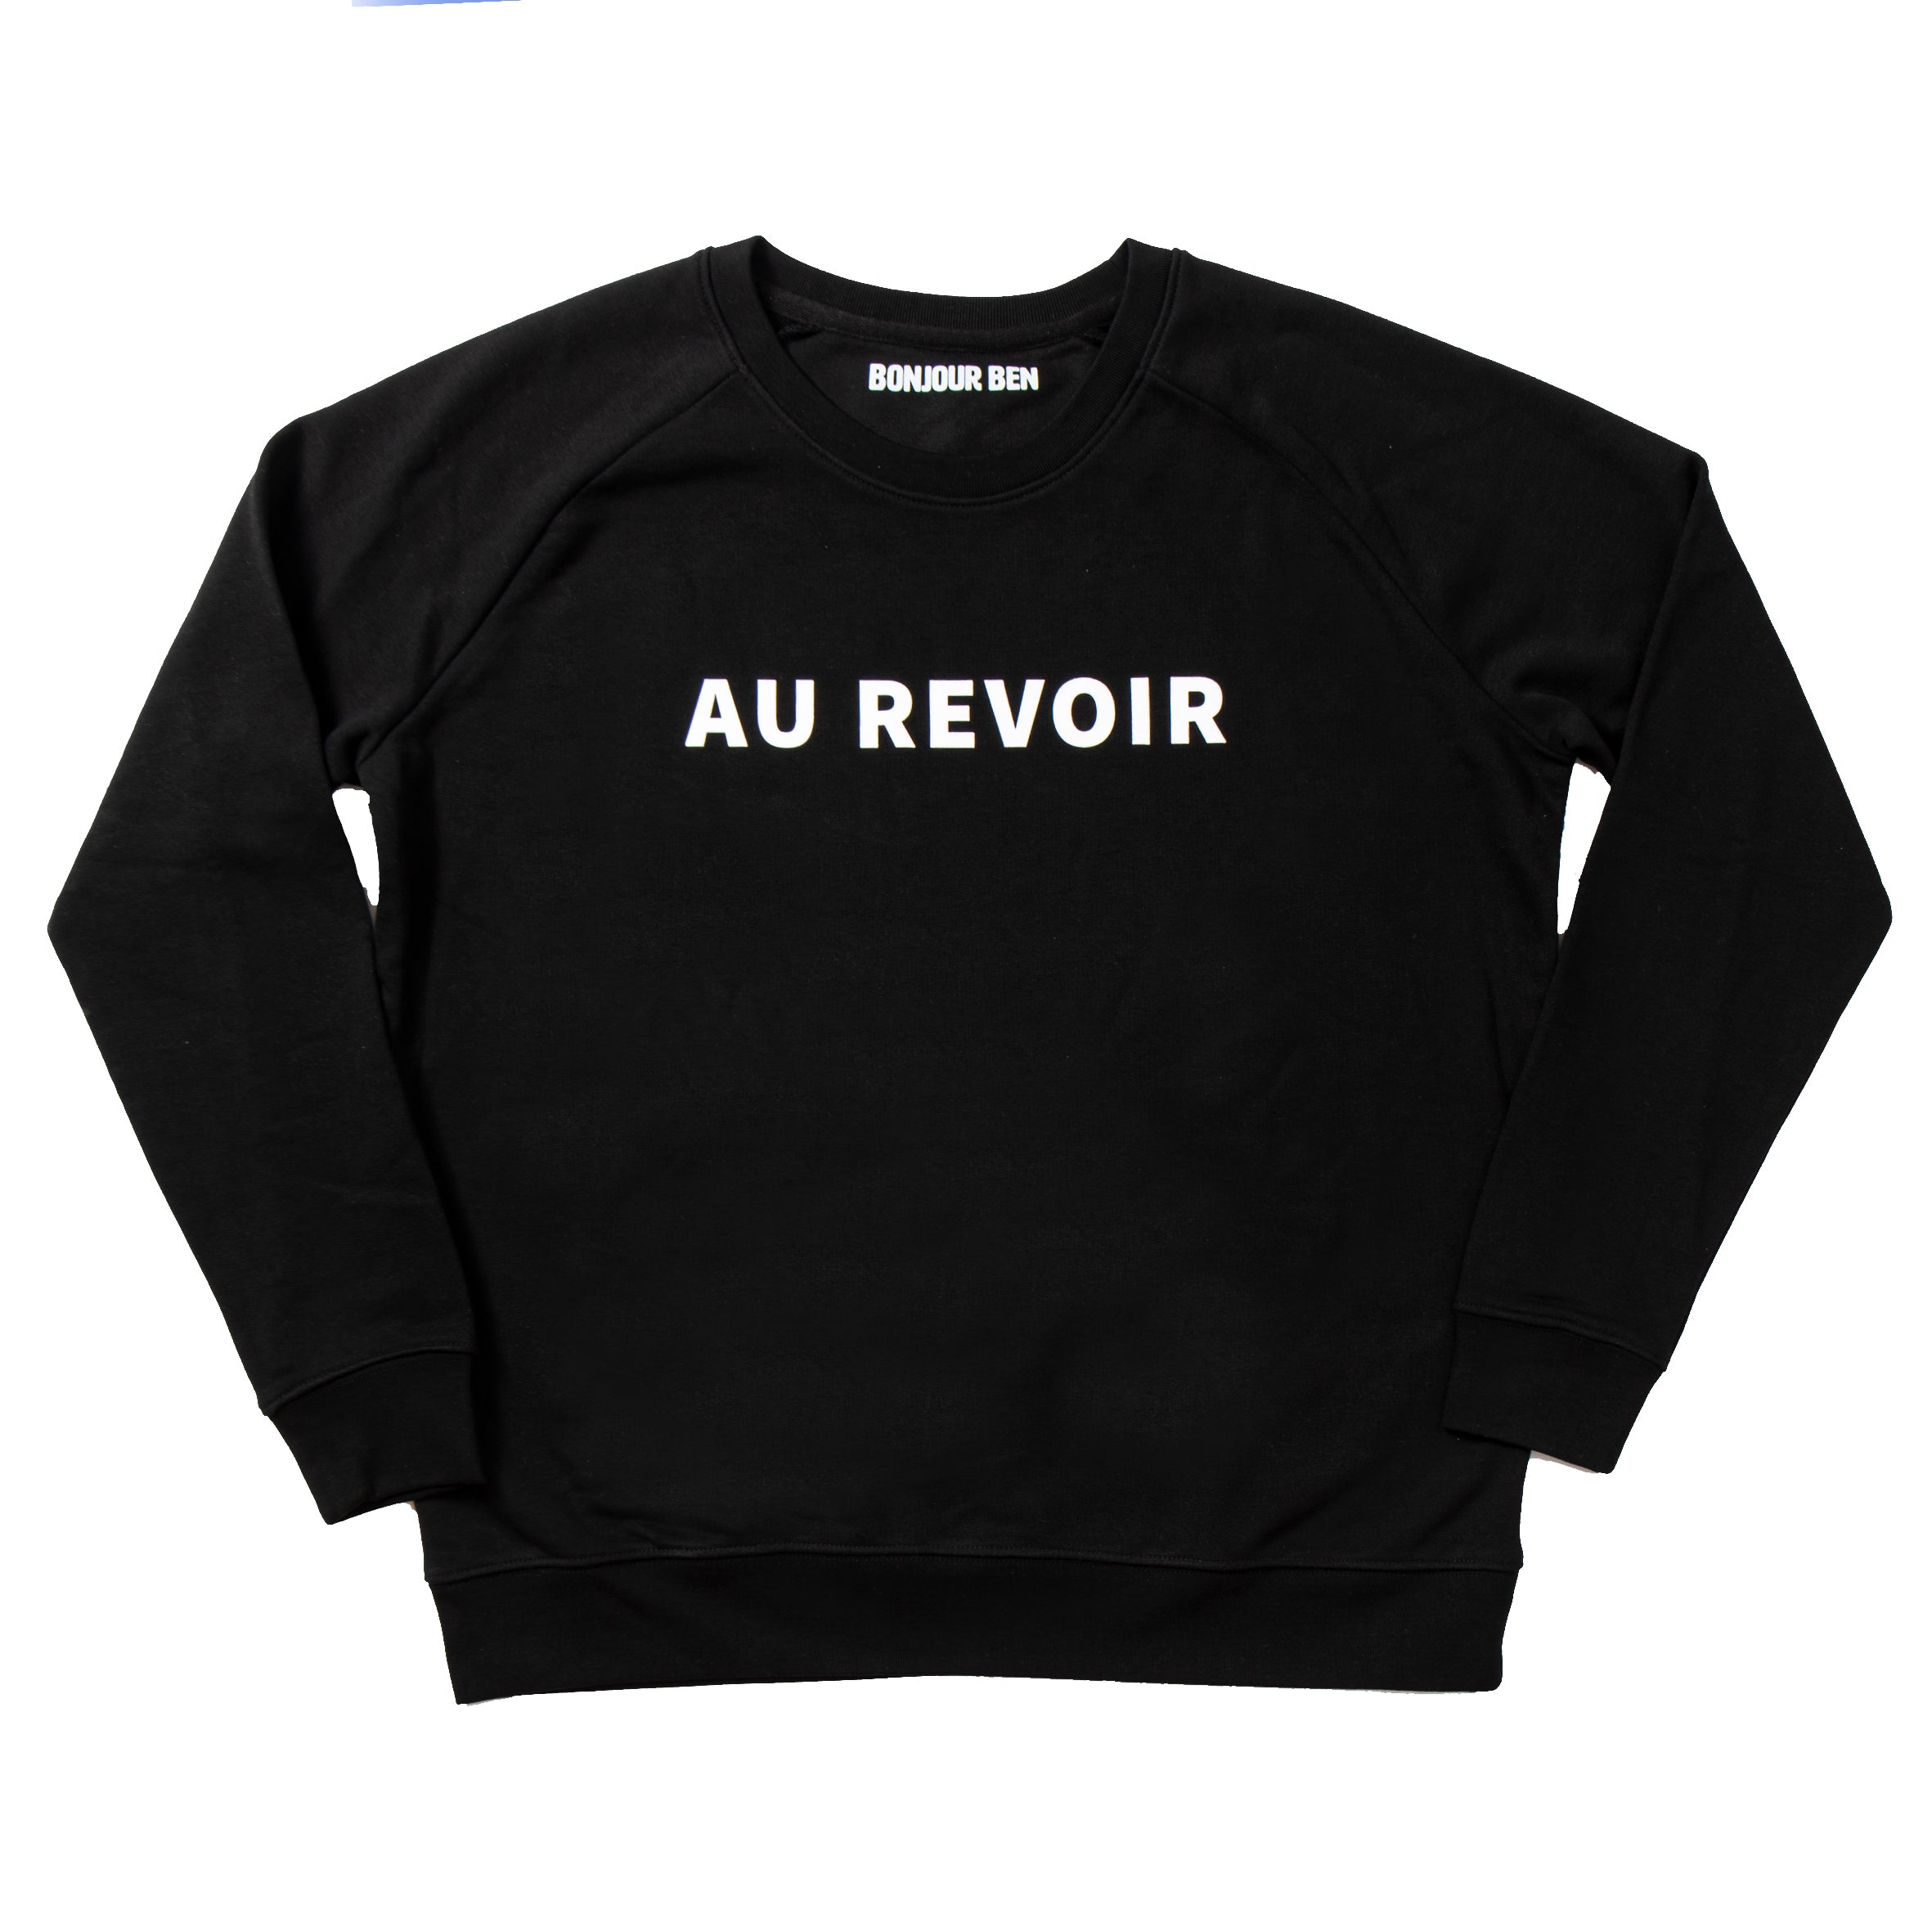 Au Revoir Sweatshirt - Schwarz/Weiß